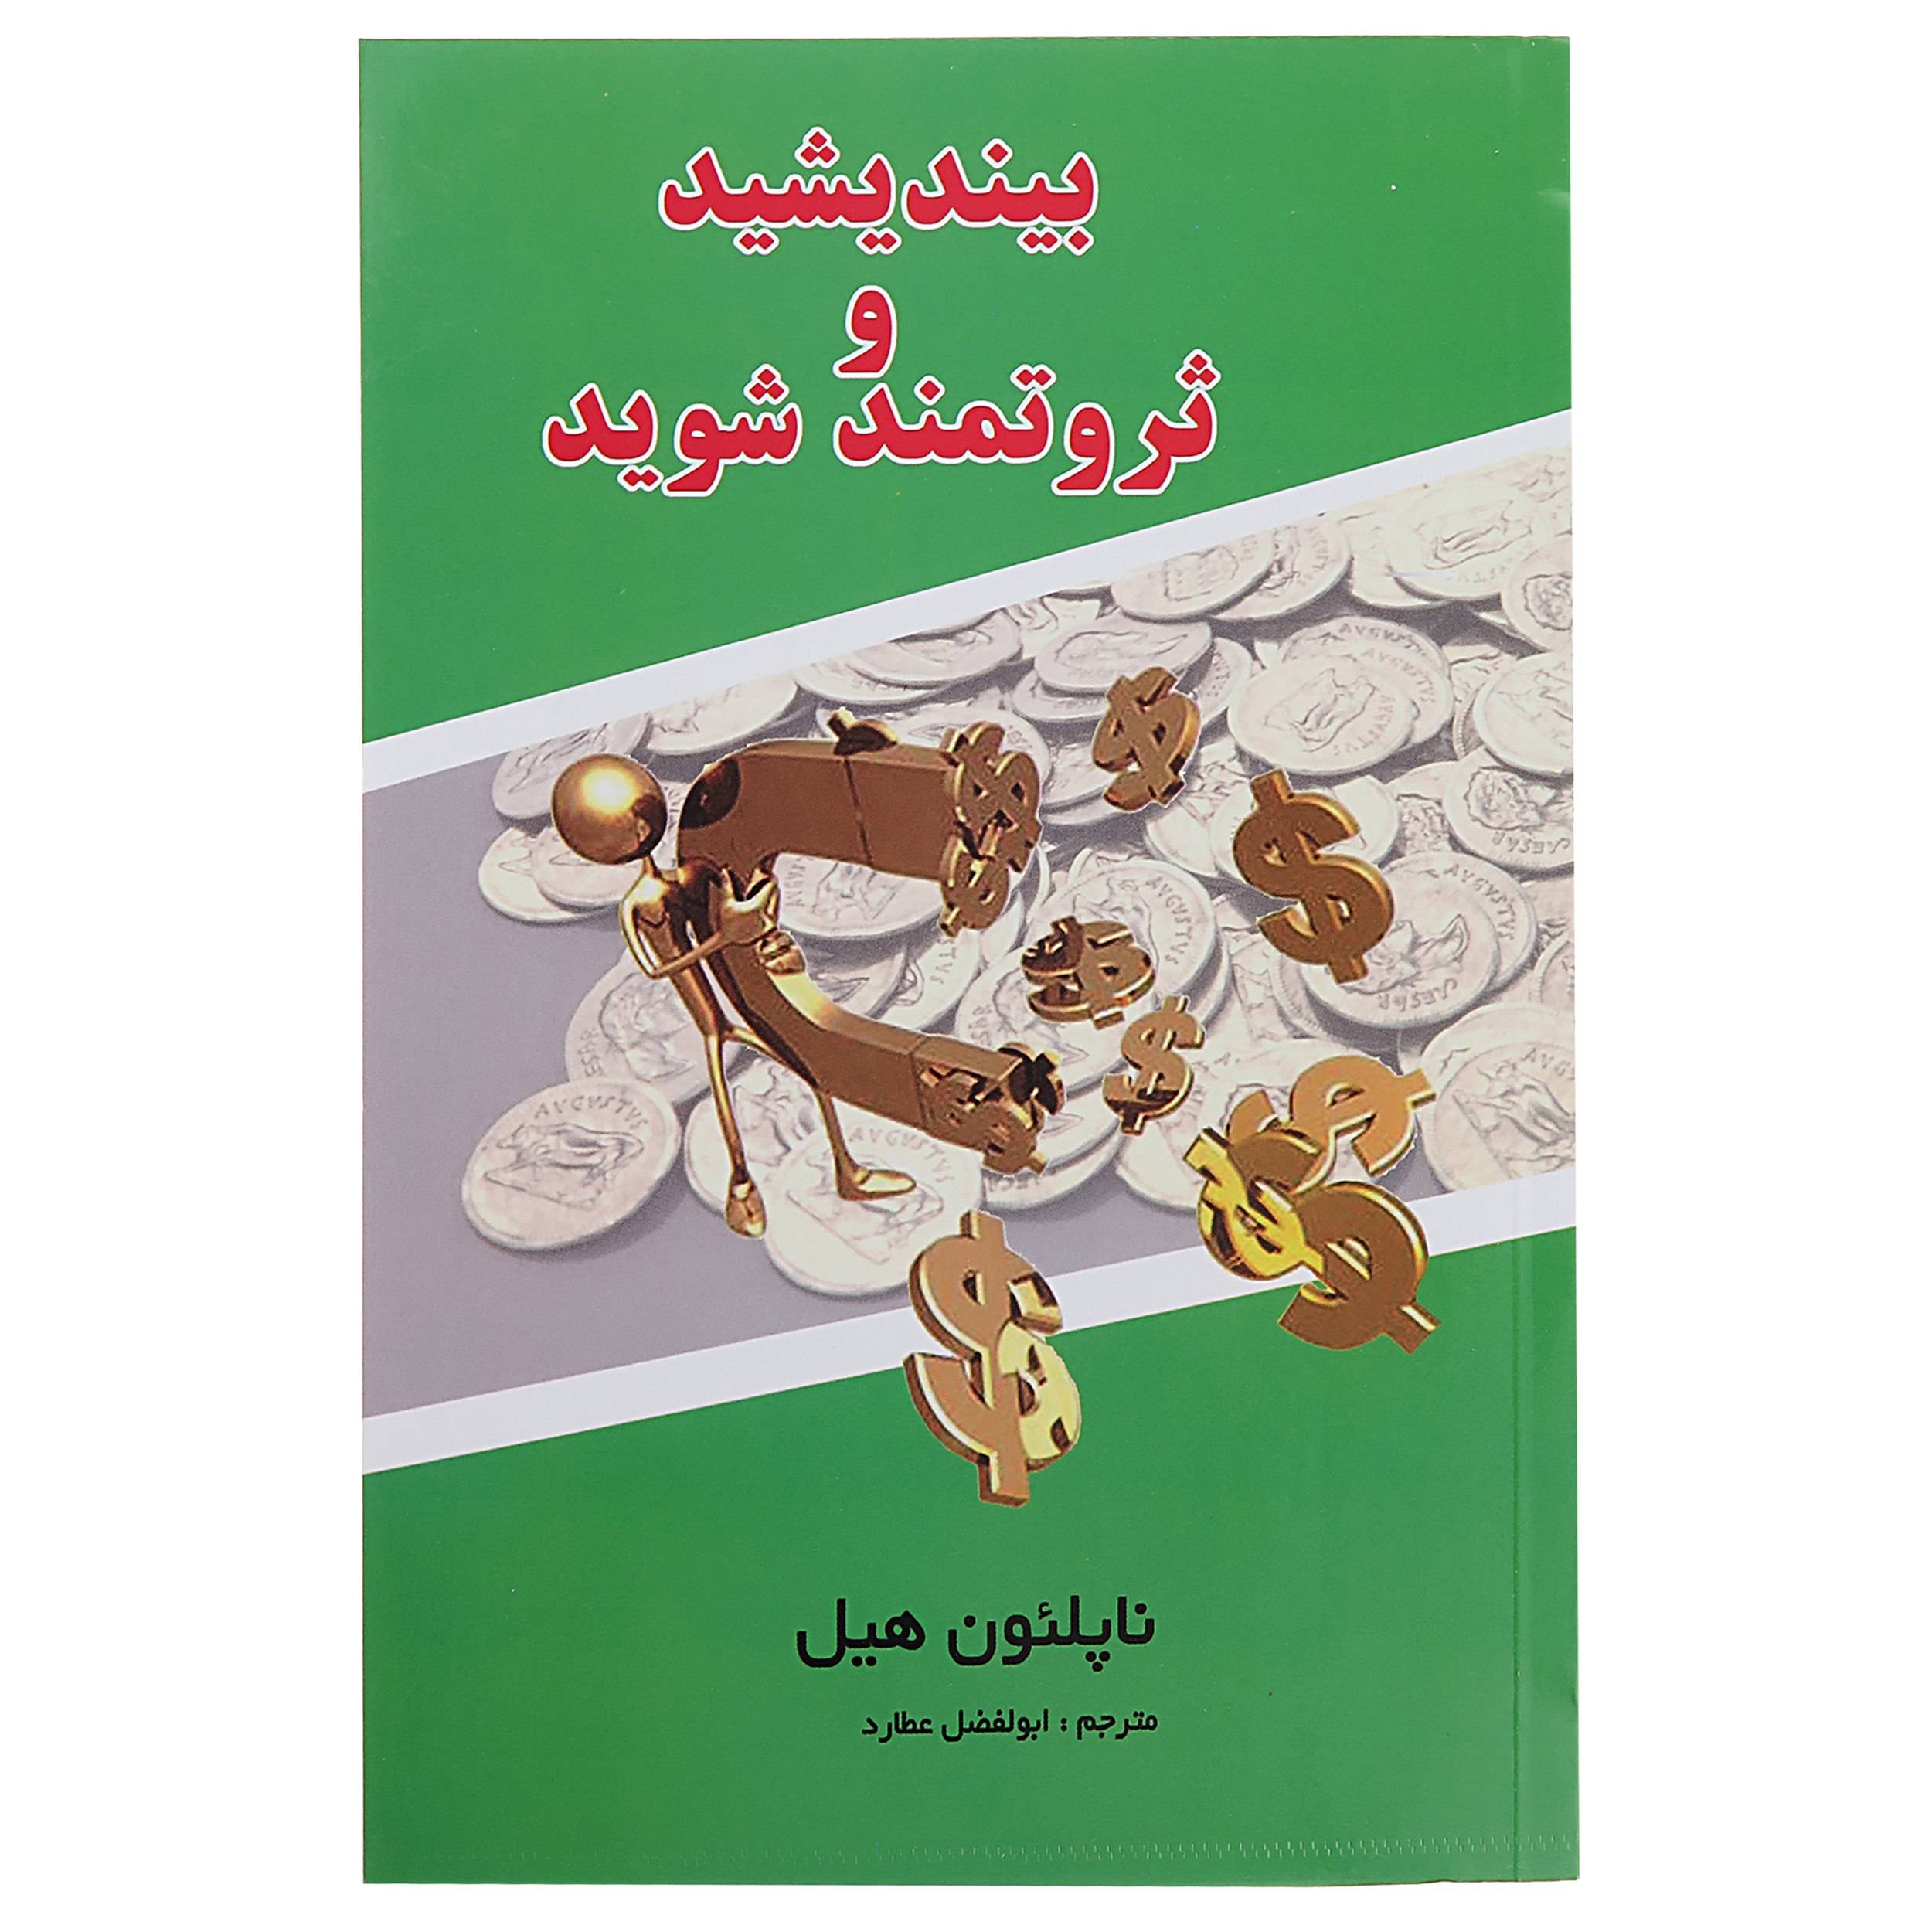 آنباکس کتاب بیندیشید و ثروتمند شوید اثر ناپلیون هیل نشر پرثوآ توسط محمدمهدی حیدری در تاریخ ۰۲ آذر ۱۴۰۰